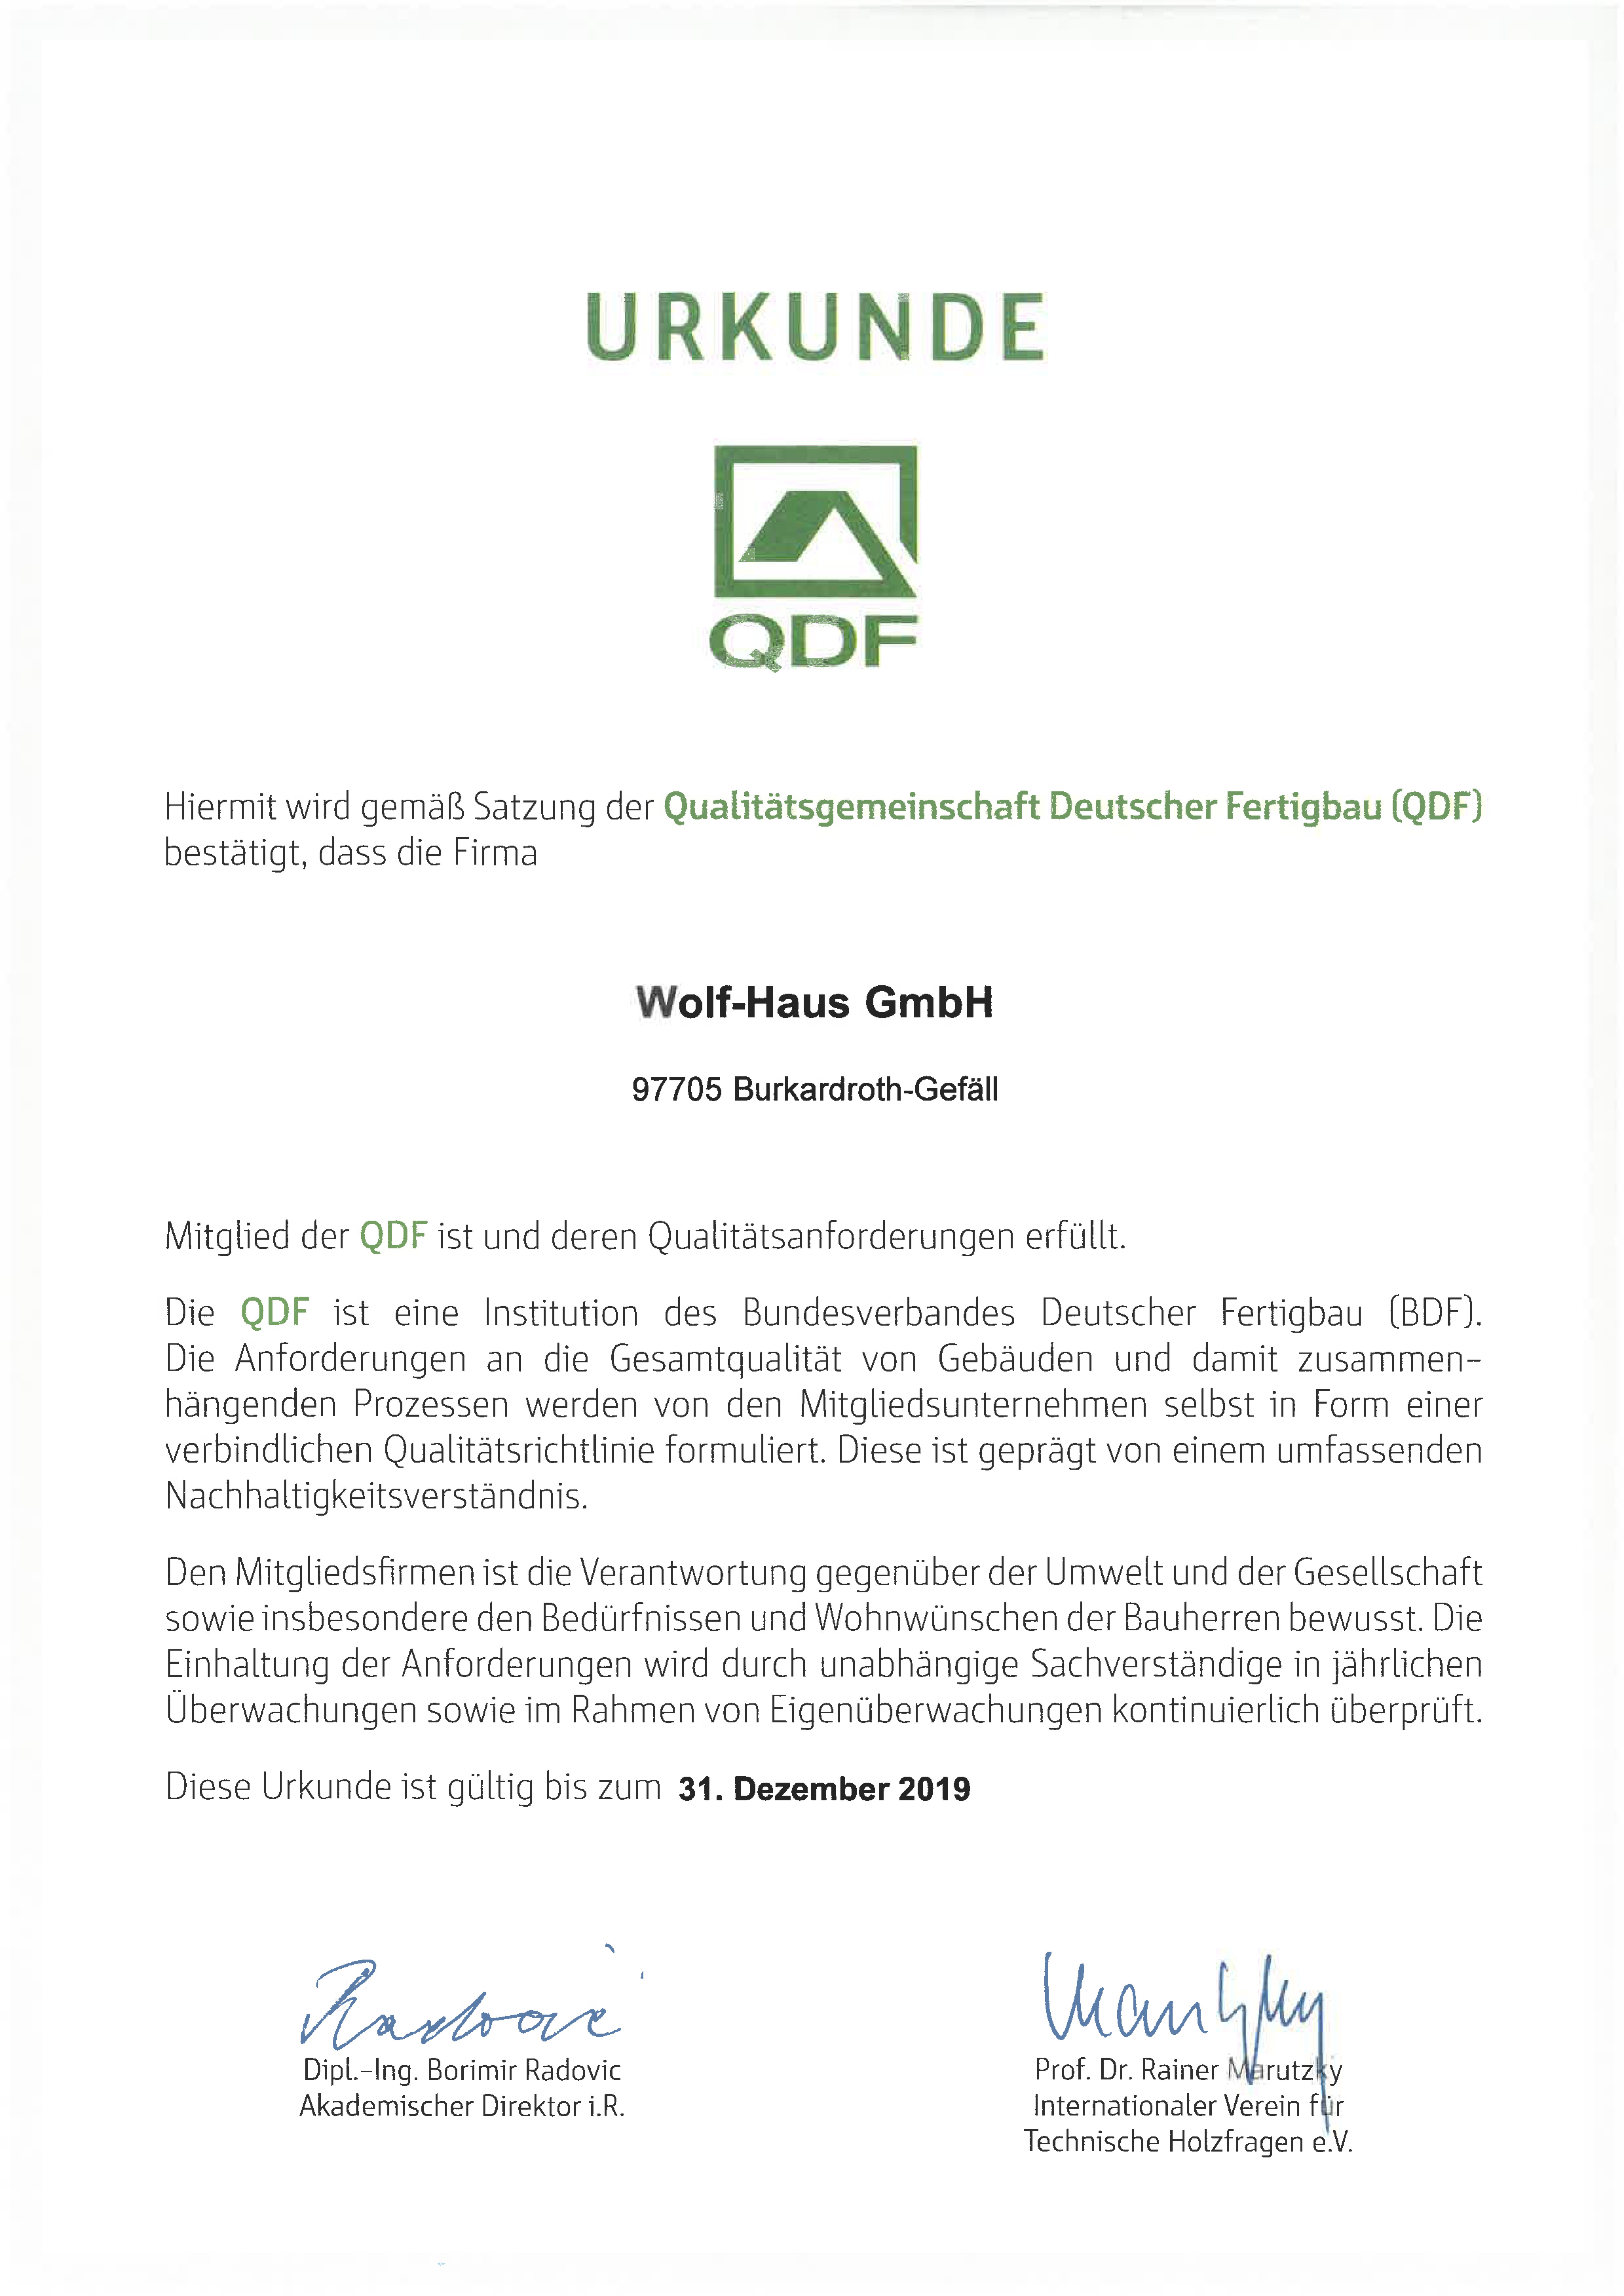 WOLF-Haus QDF-Urkunde